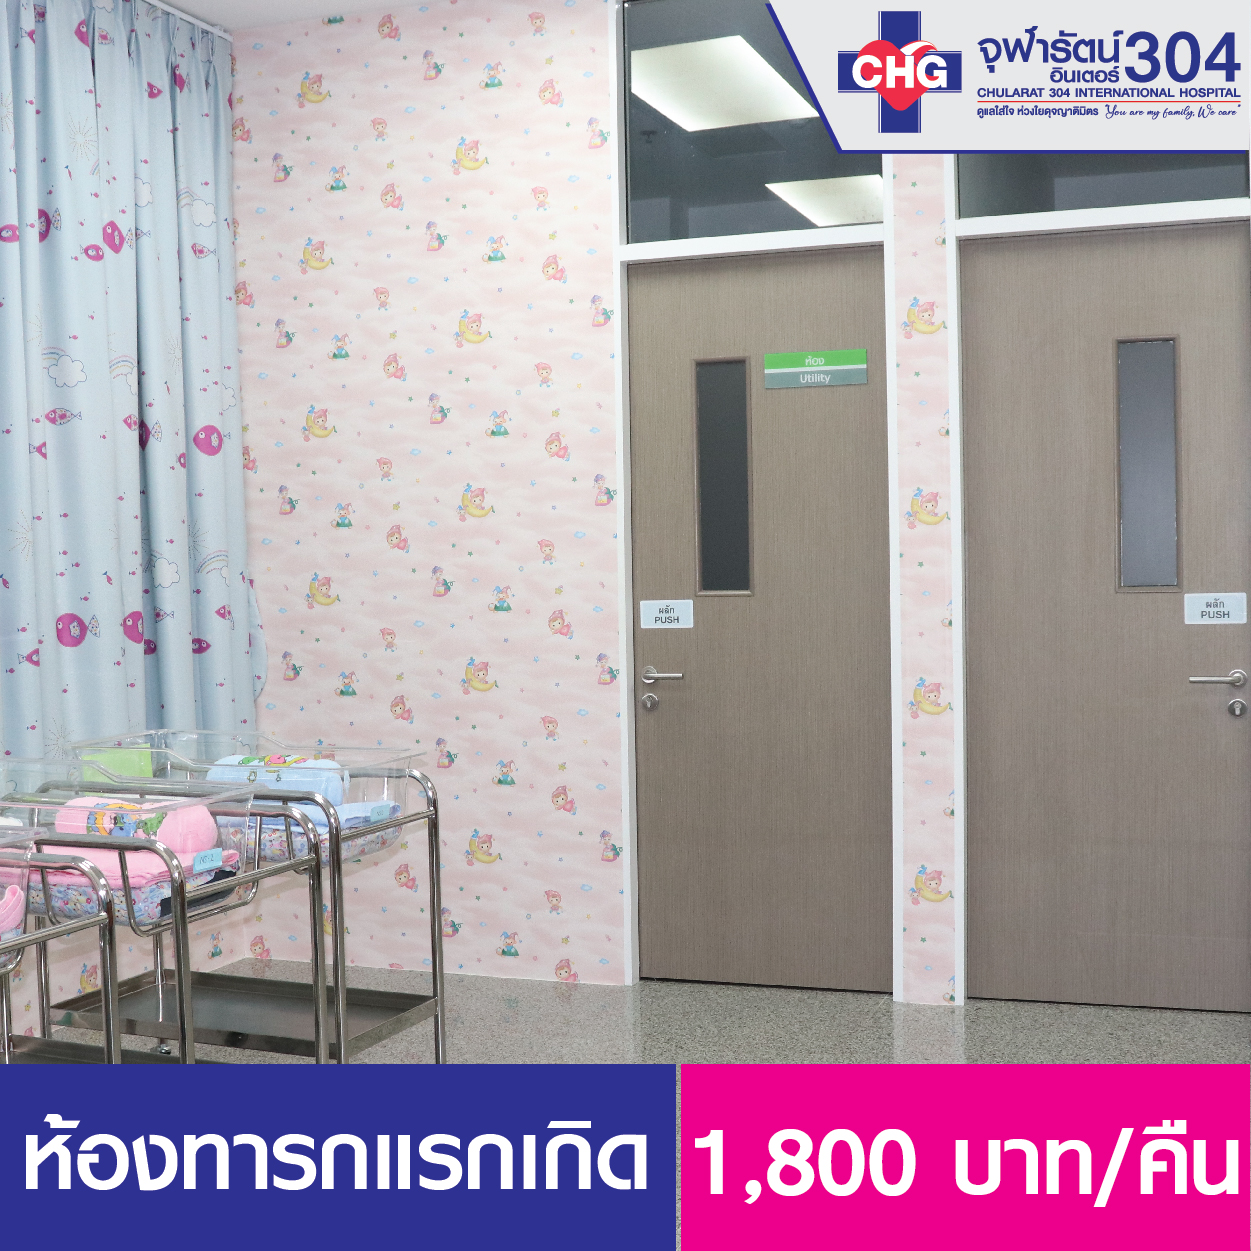 ห้องเด็กแรกเกิด - ห้องพักผู้ป่วยใน - โรงพยาบาลจุฬารัตน์ 304 อินเตอร์